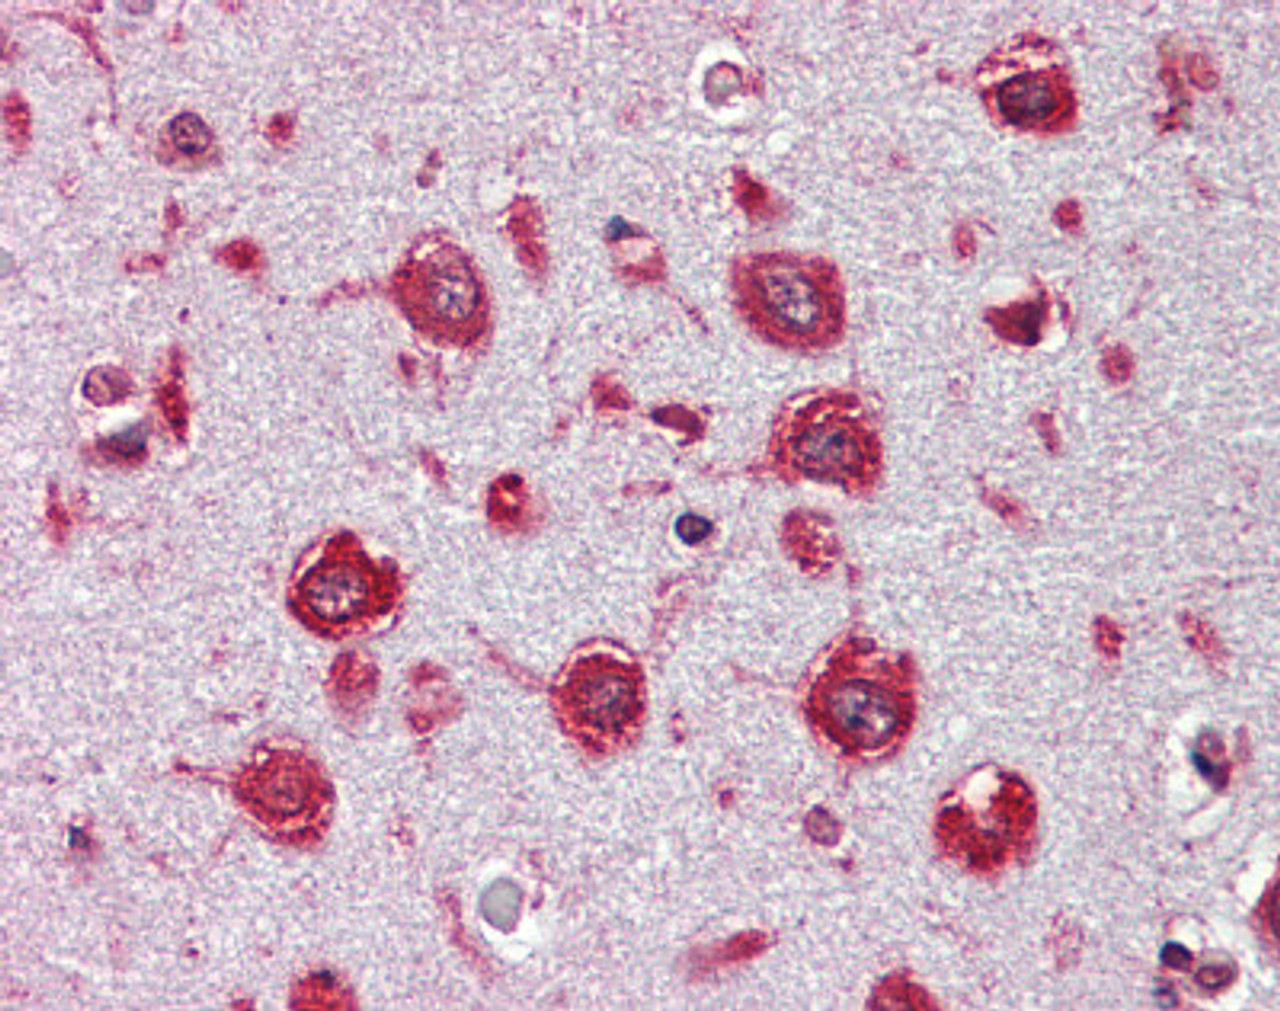 Immunohistochemistry of Human brain cortex tissue stained using Trypsin Monoclonal Antibody.